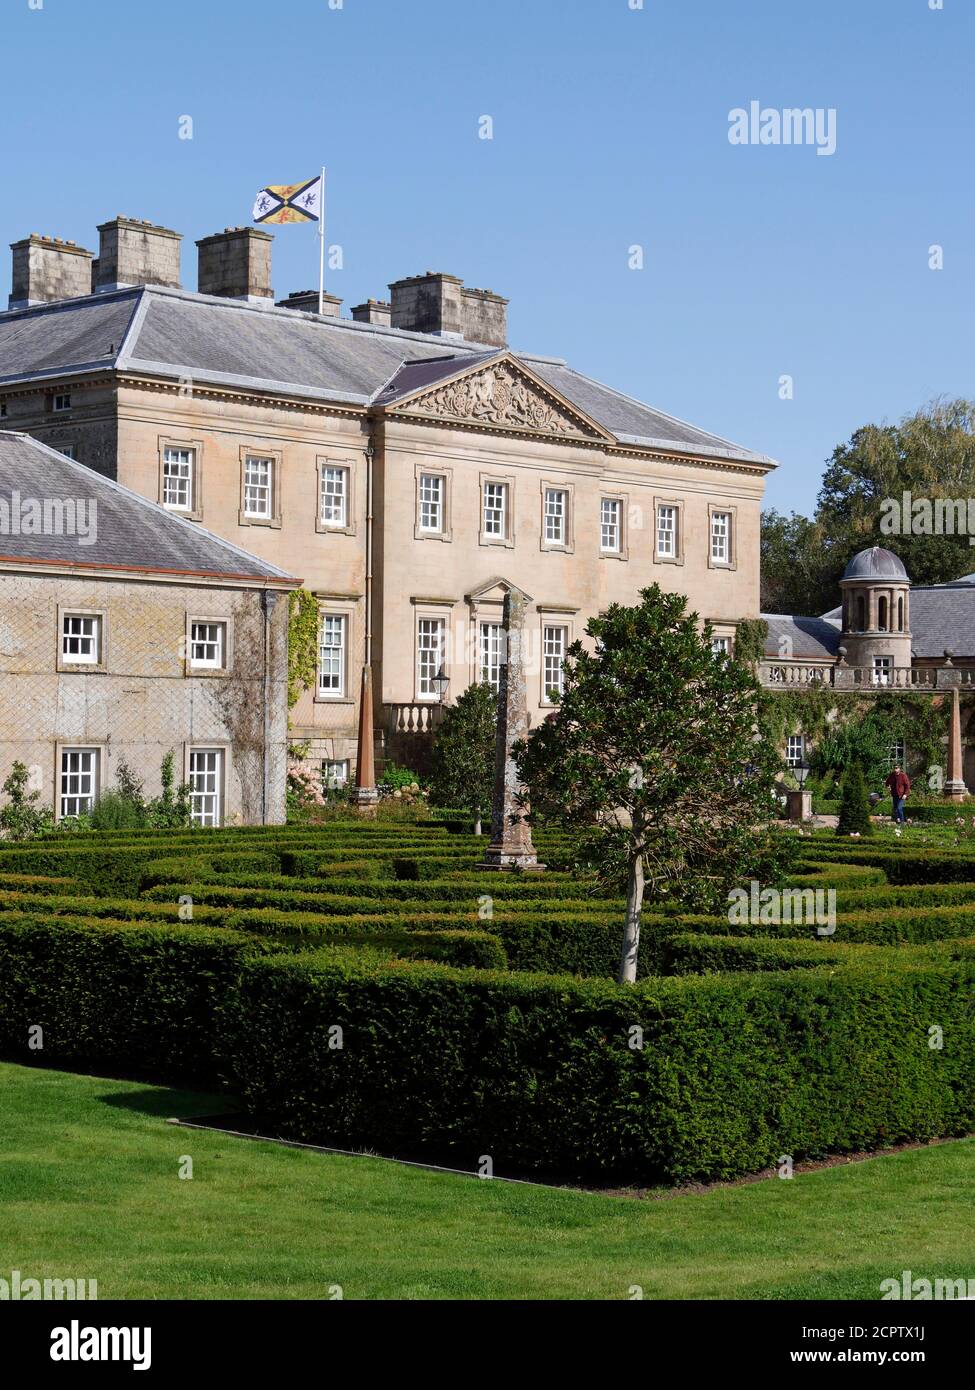 Dumfries House è una casa di campagna palladiana del XVIII secolo progettata da Robert e John Adams, vicino a Cumnock in Ayrshire, Scozia. REGNO UNITO Foto Stock